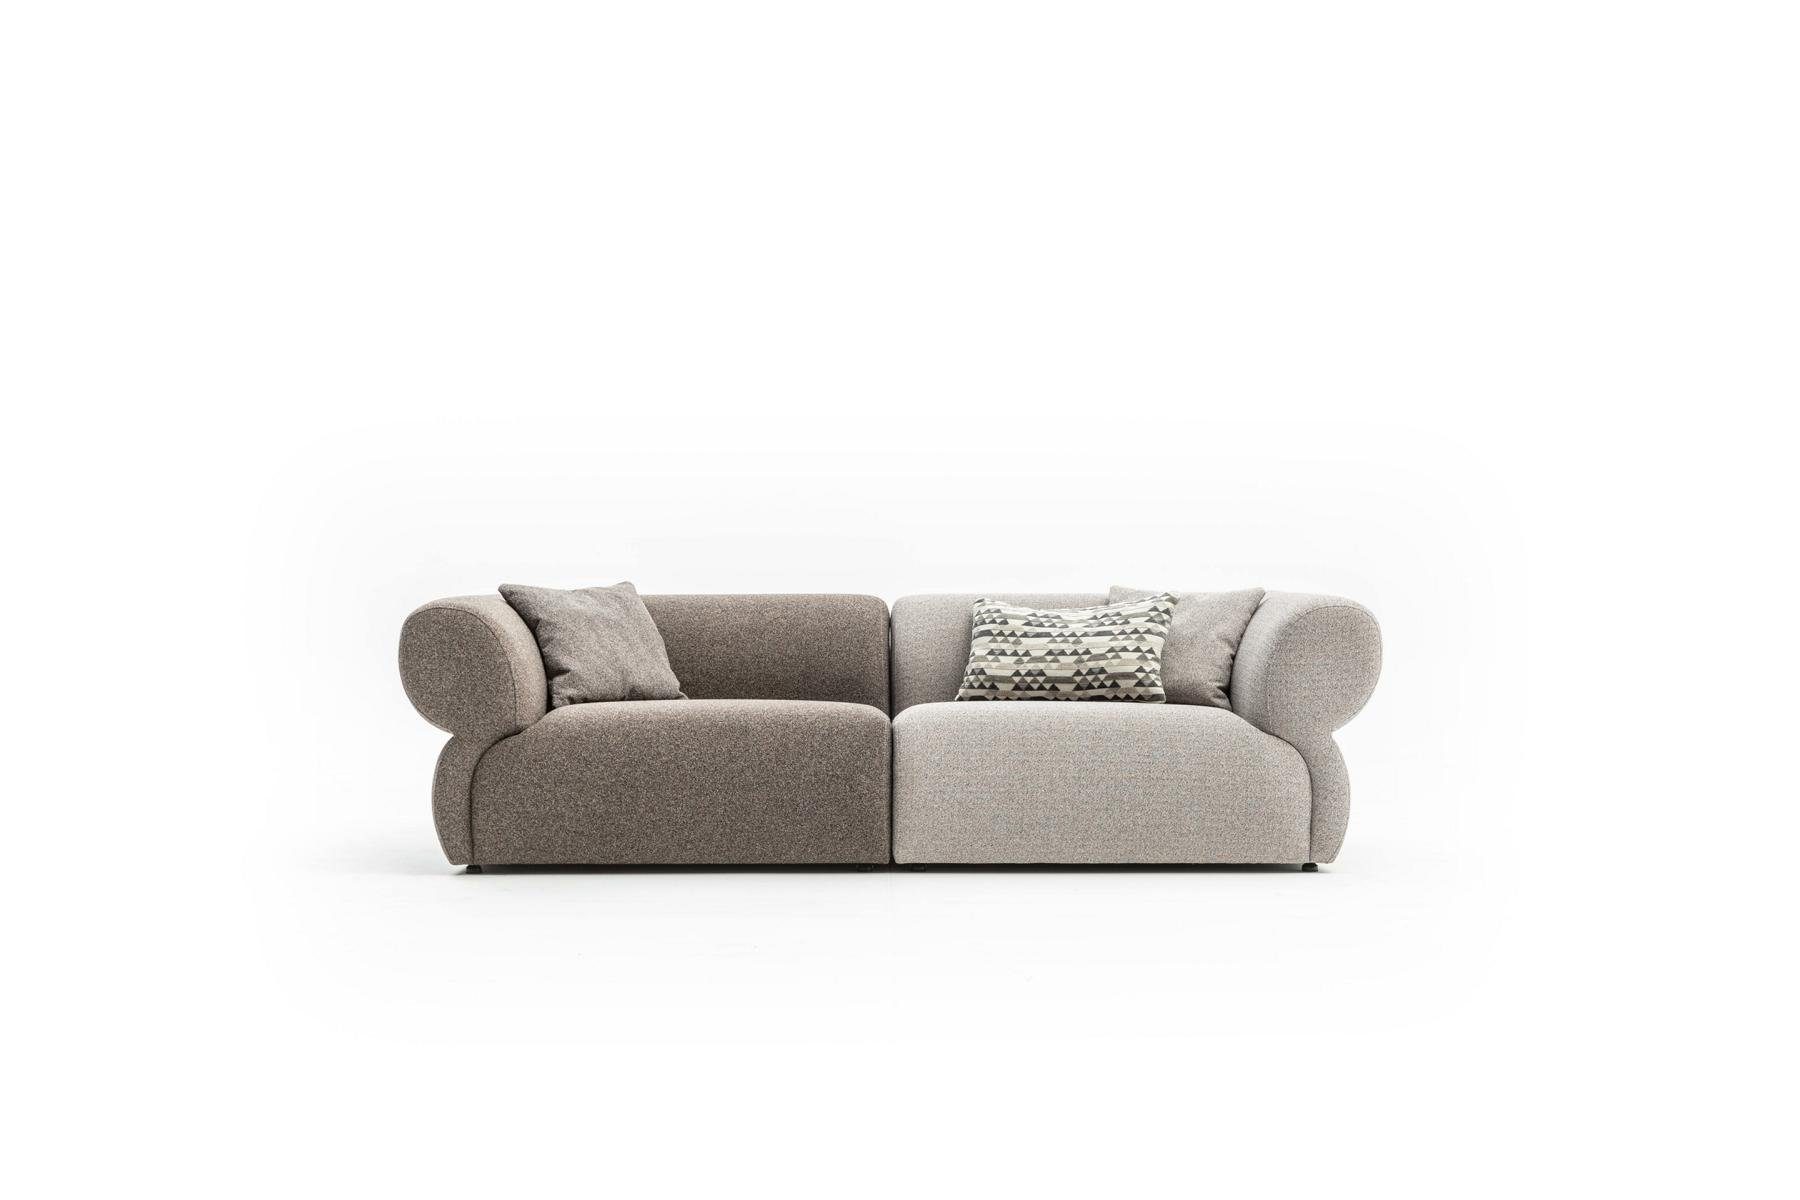 JVmoebel 3-Sitzer Luxus Sofa 3 Sitzer Polstersofa Wohnzimmer Dreisitzer Couchen 250cm, Made in Europe